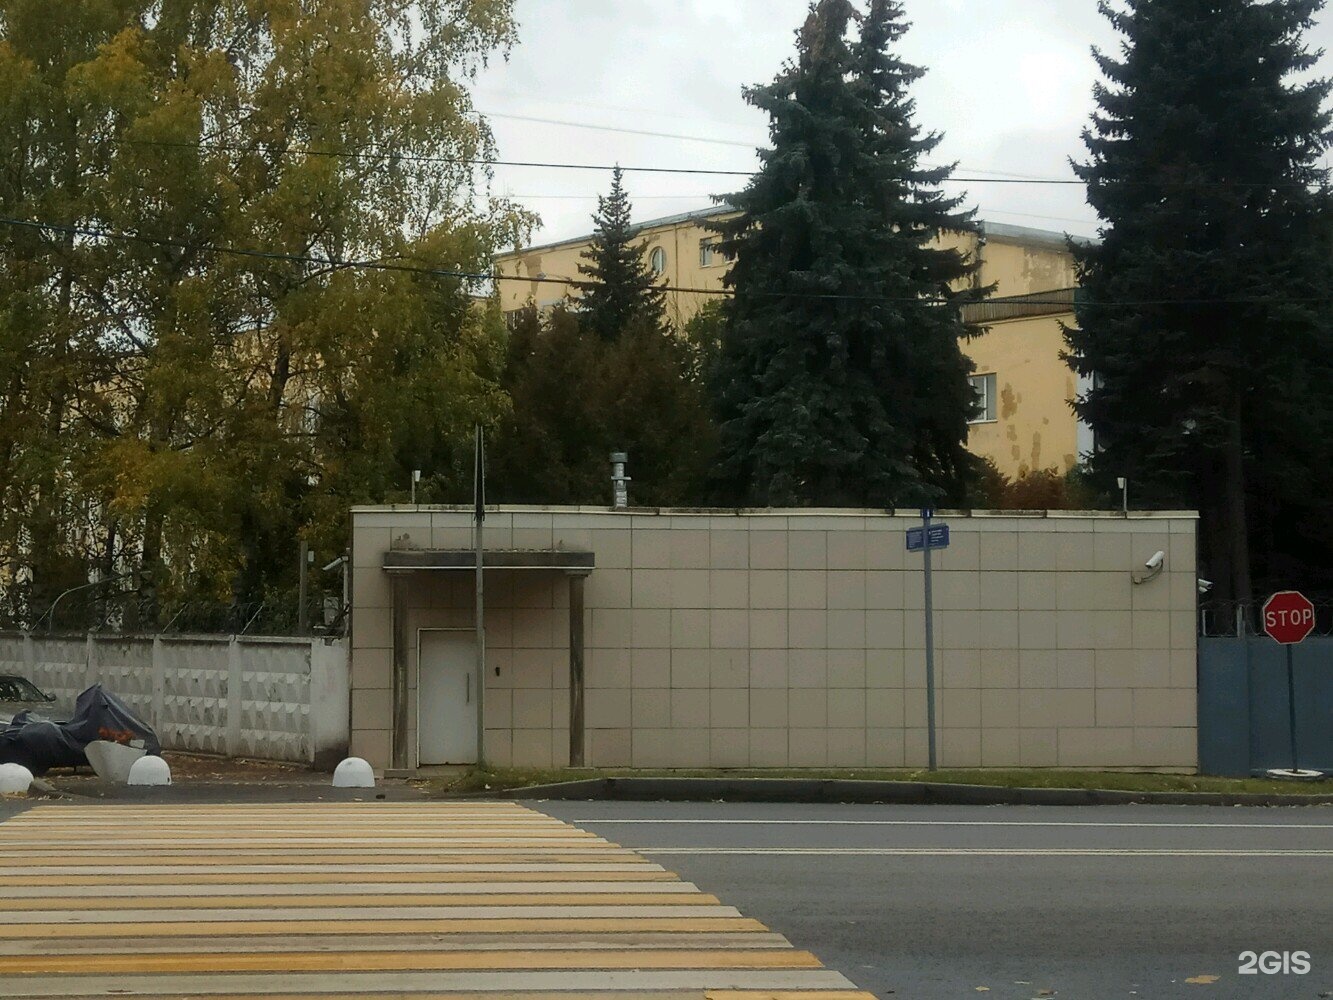 Пограничный институт москва